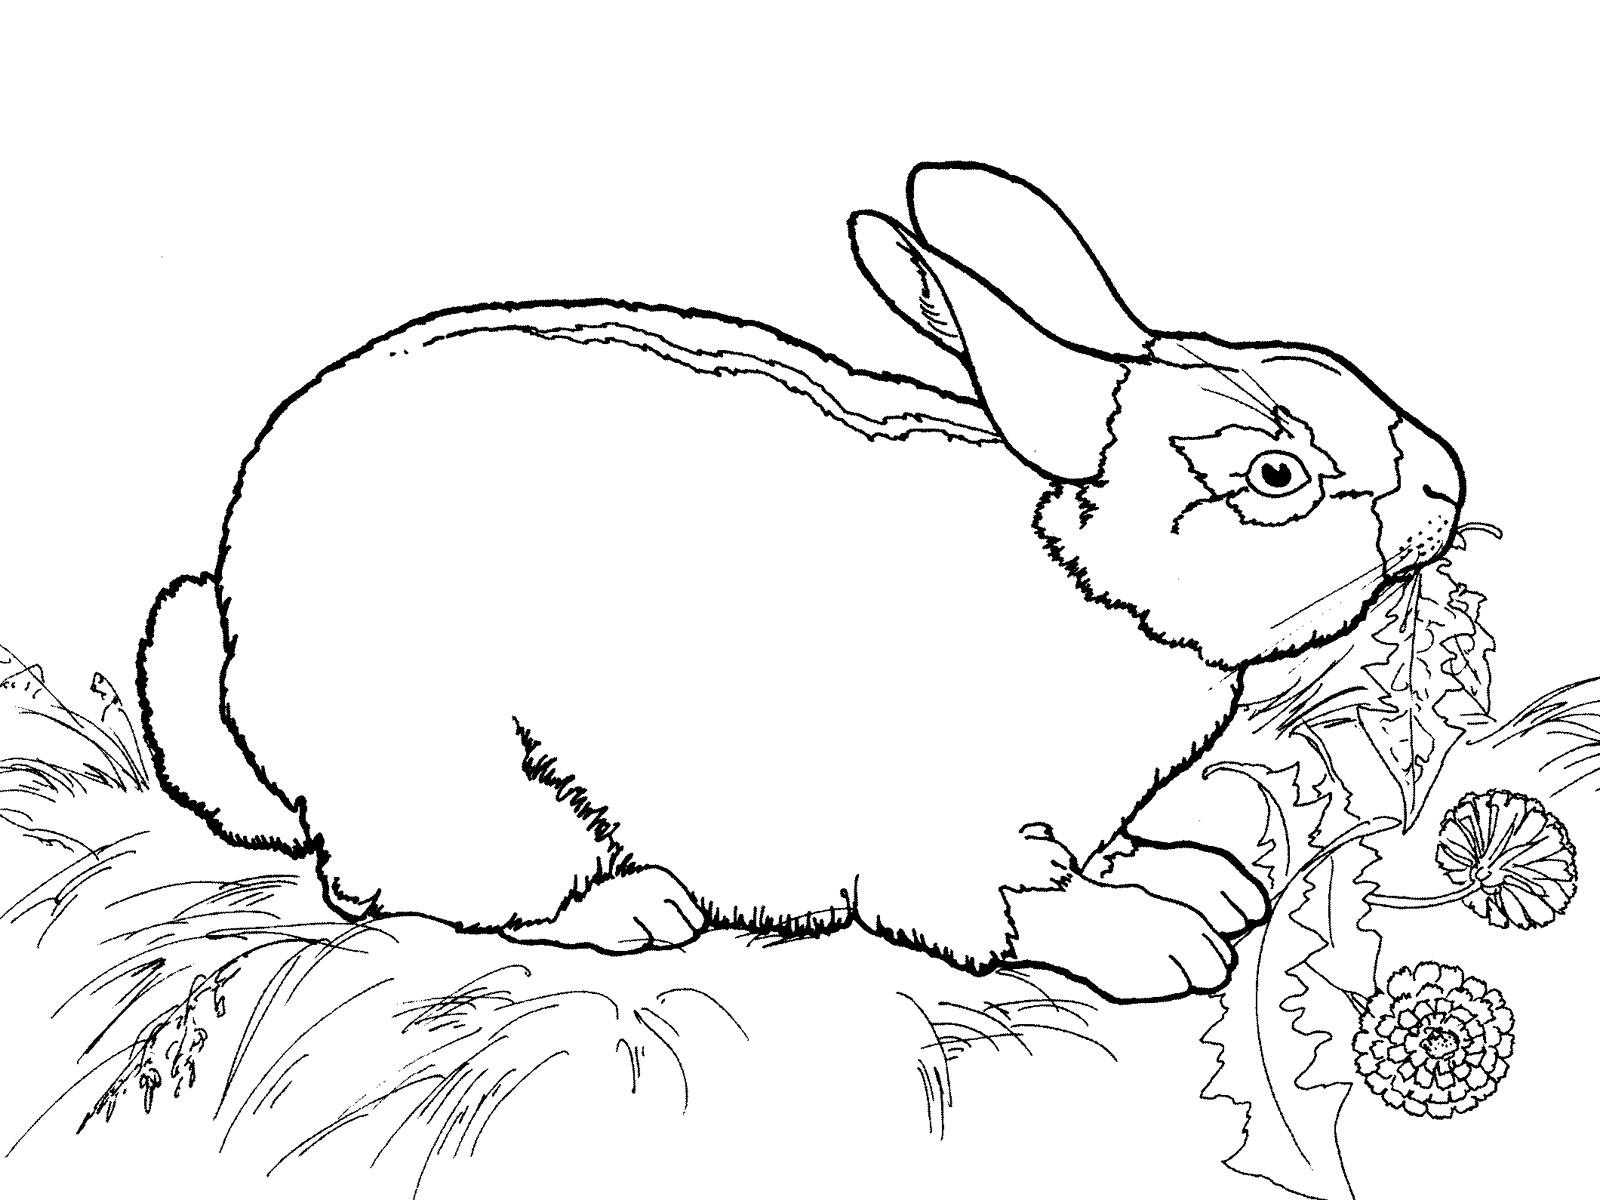 Опис: розмальовки  Заєць поїдає траву. Категорія: Тварини. Теги:  заєць, трава, квіти.